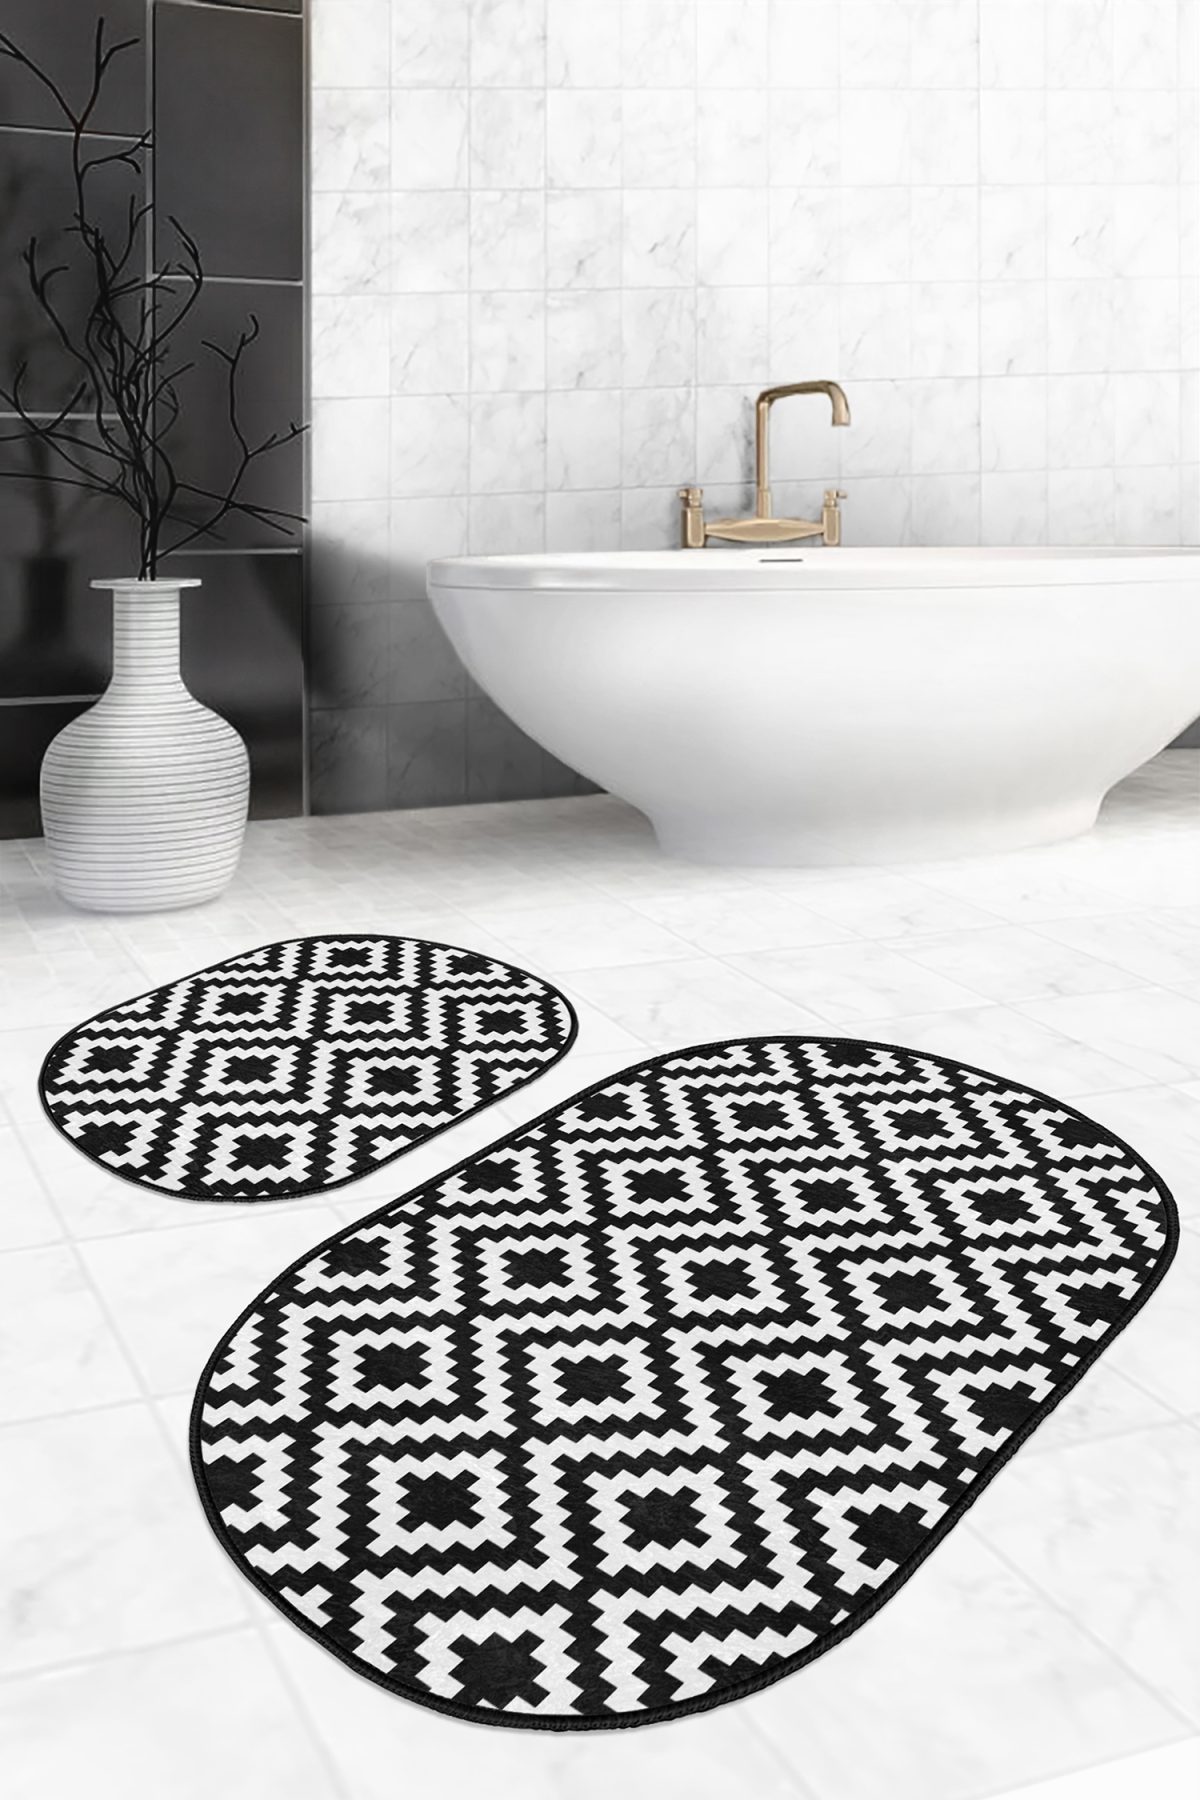 Siyah Beyaz Mozaik Desenli Dijital Baskılı 2'li Oval Kaymaz Tabanlı Banyo & Mutfak Paspas Takımı Realhomes